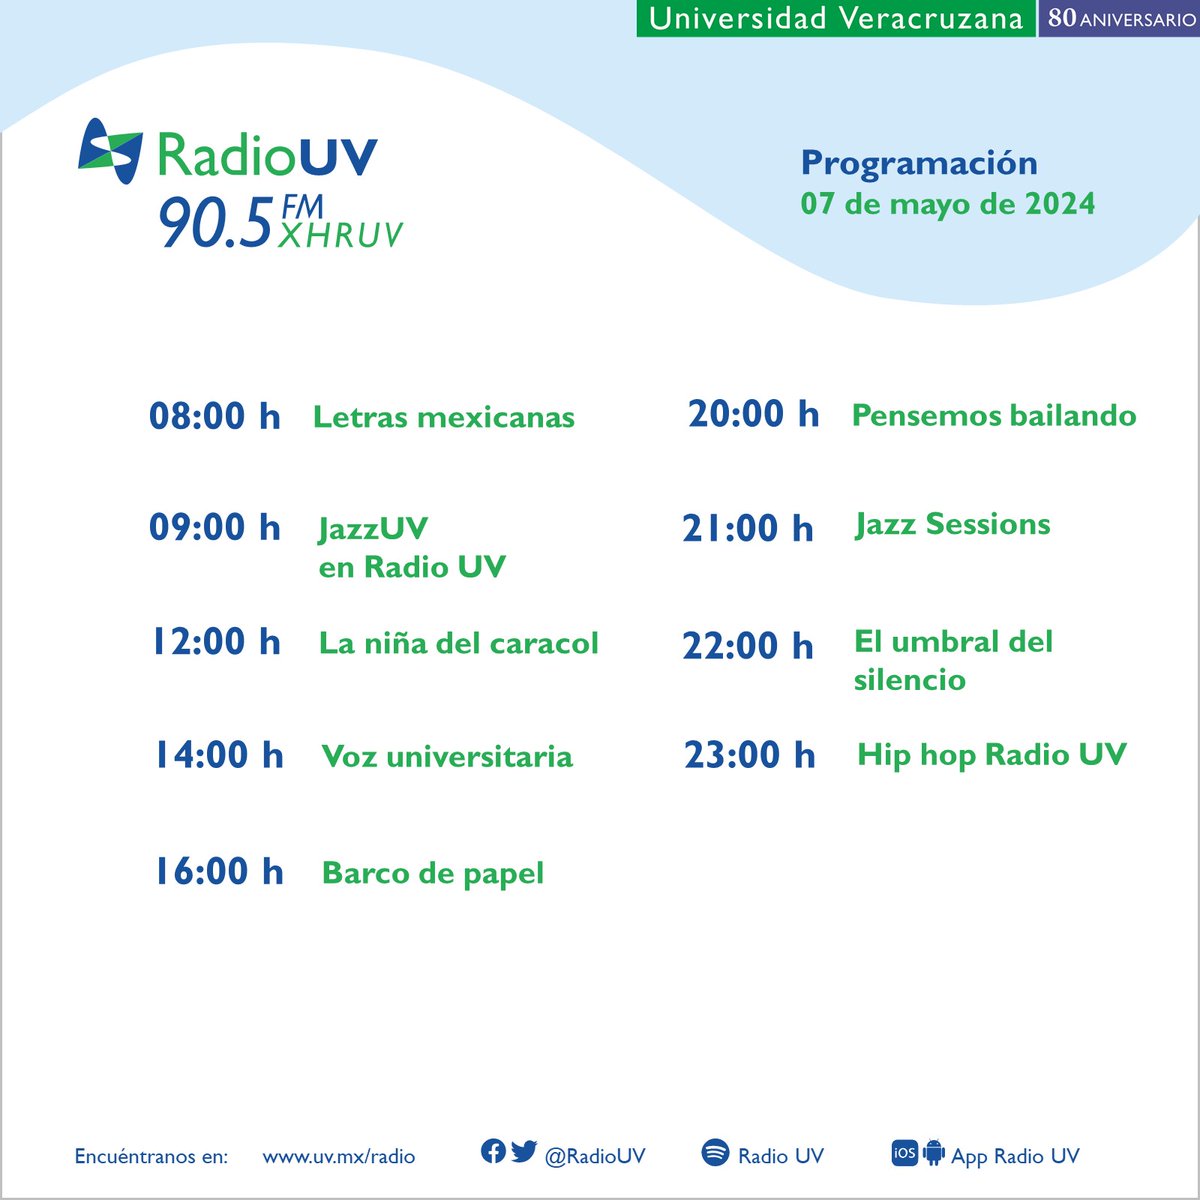 Descubre lo que #RadioUV transmite para ti los martes, ¡consulta nuestra programación y sintoniza la señal del 90.5 FM! 🔊Escucha en línea: bit.ly/radiouvenlinea y por la App Radio UV.